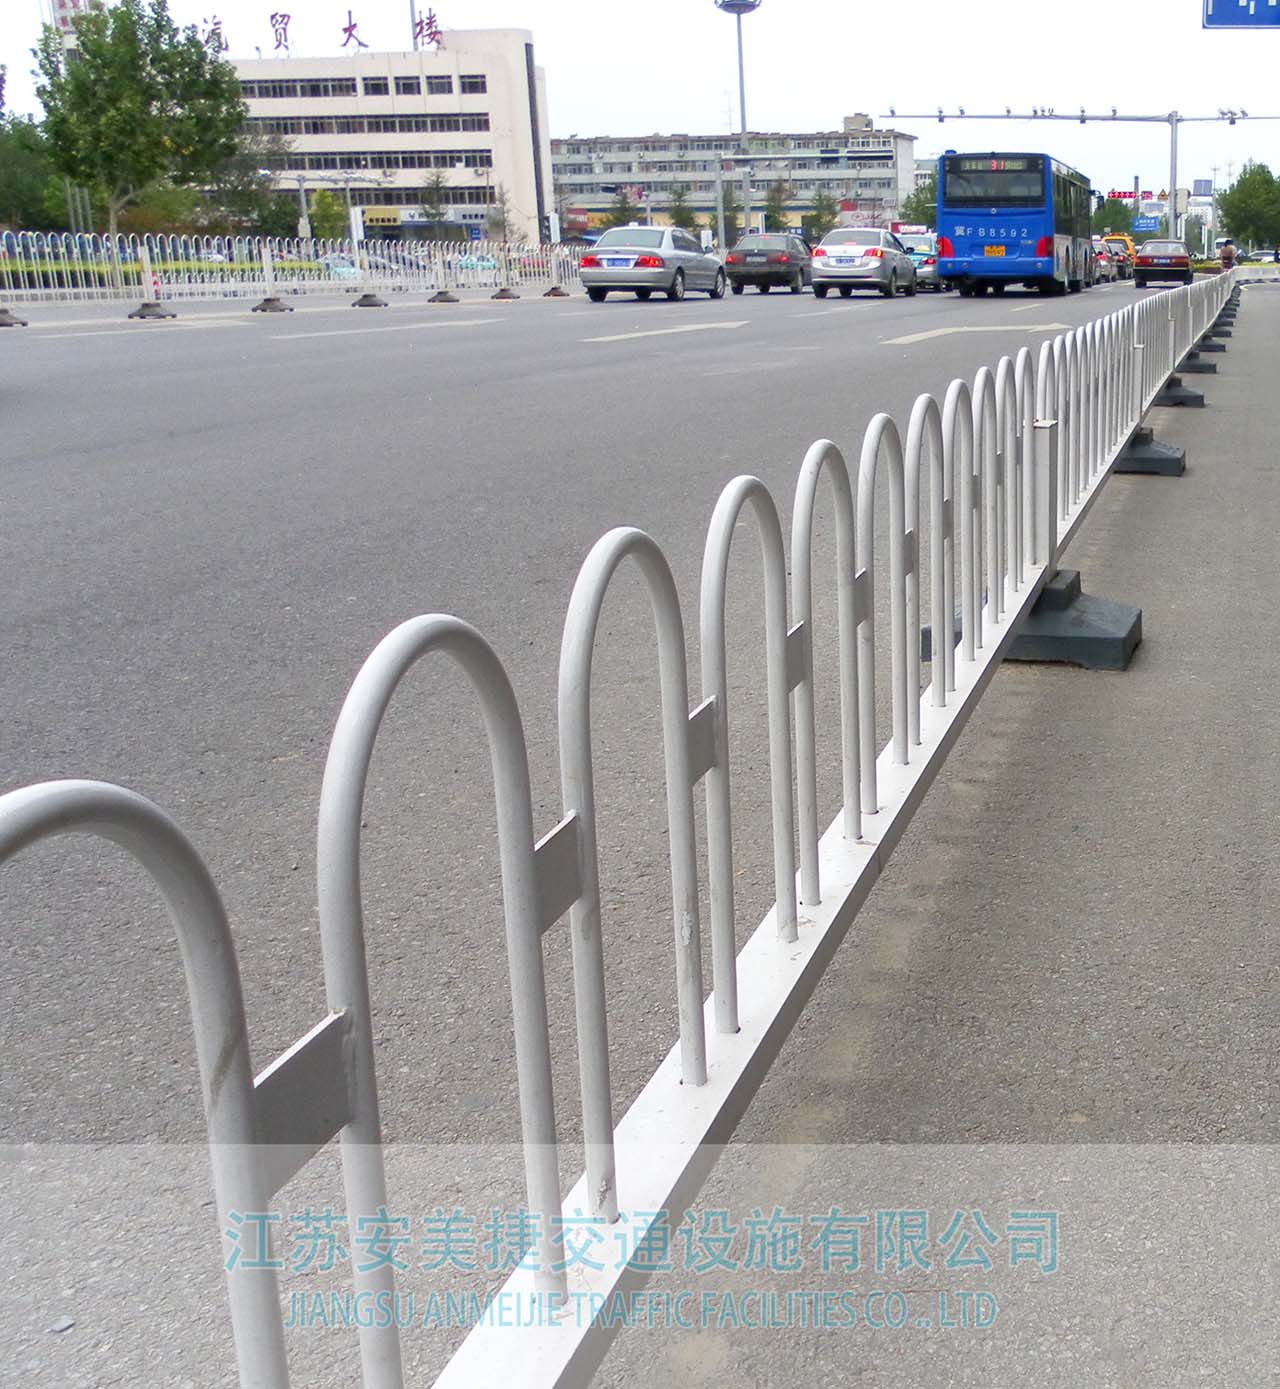 我公司2020年度在邵阳市公安局交通警察支队道路机非隔离护栏采购项目中标！